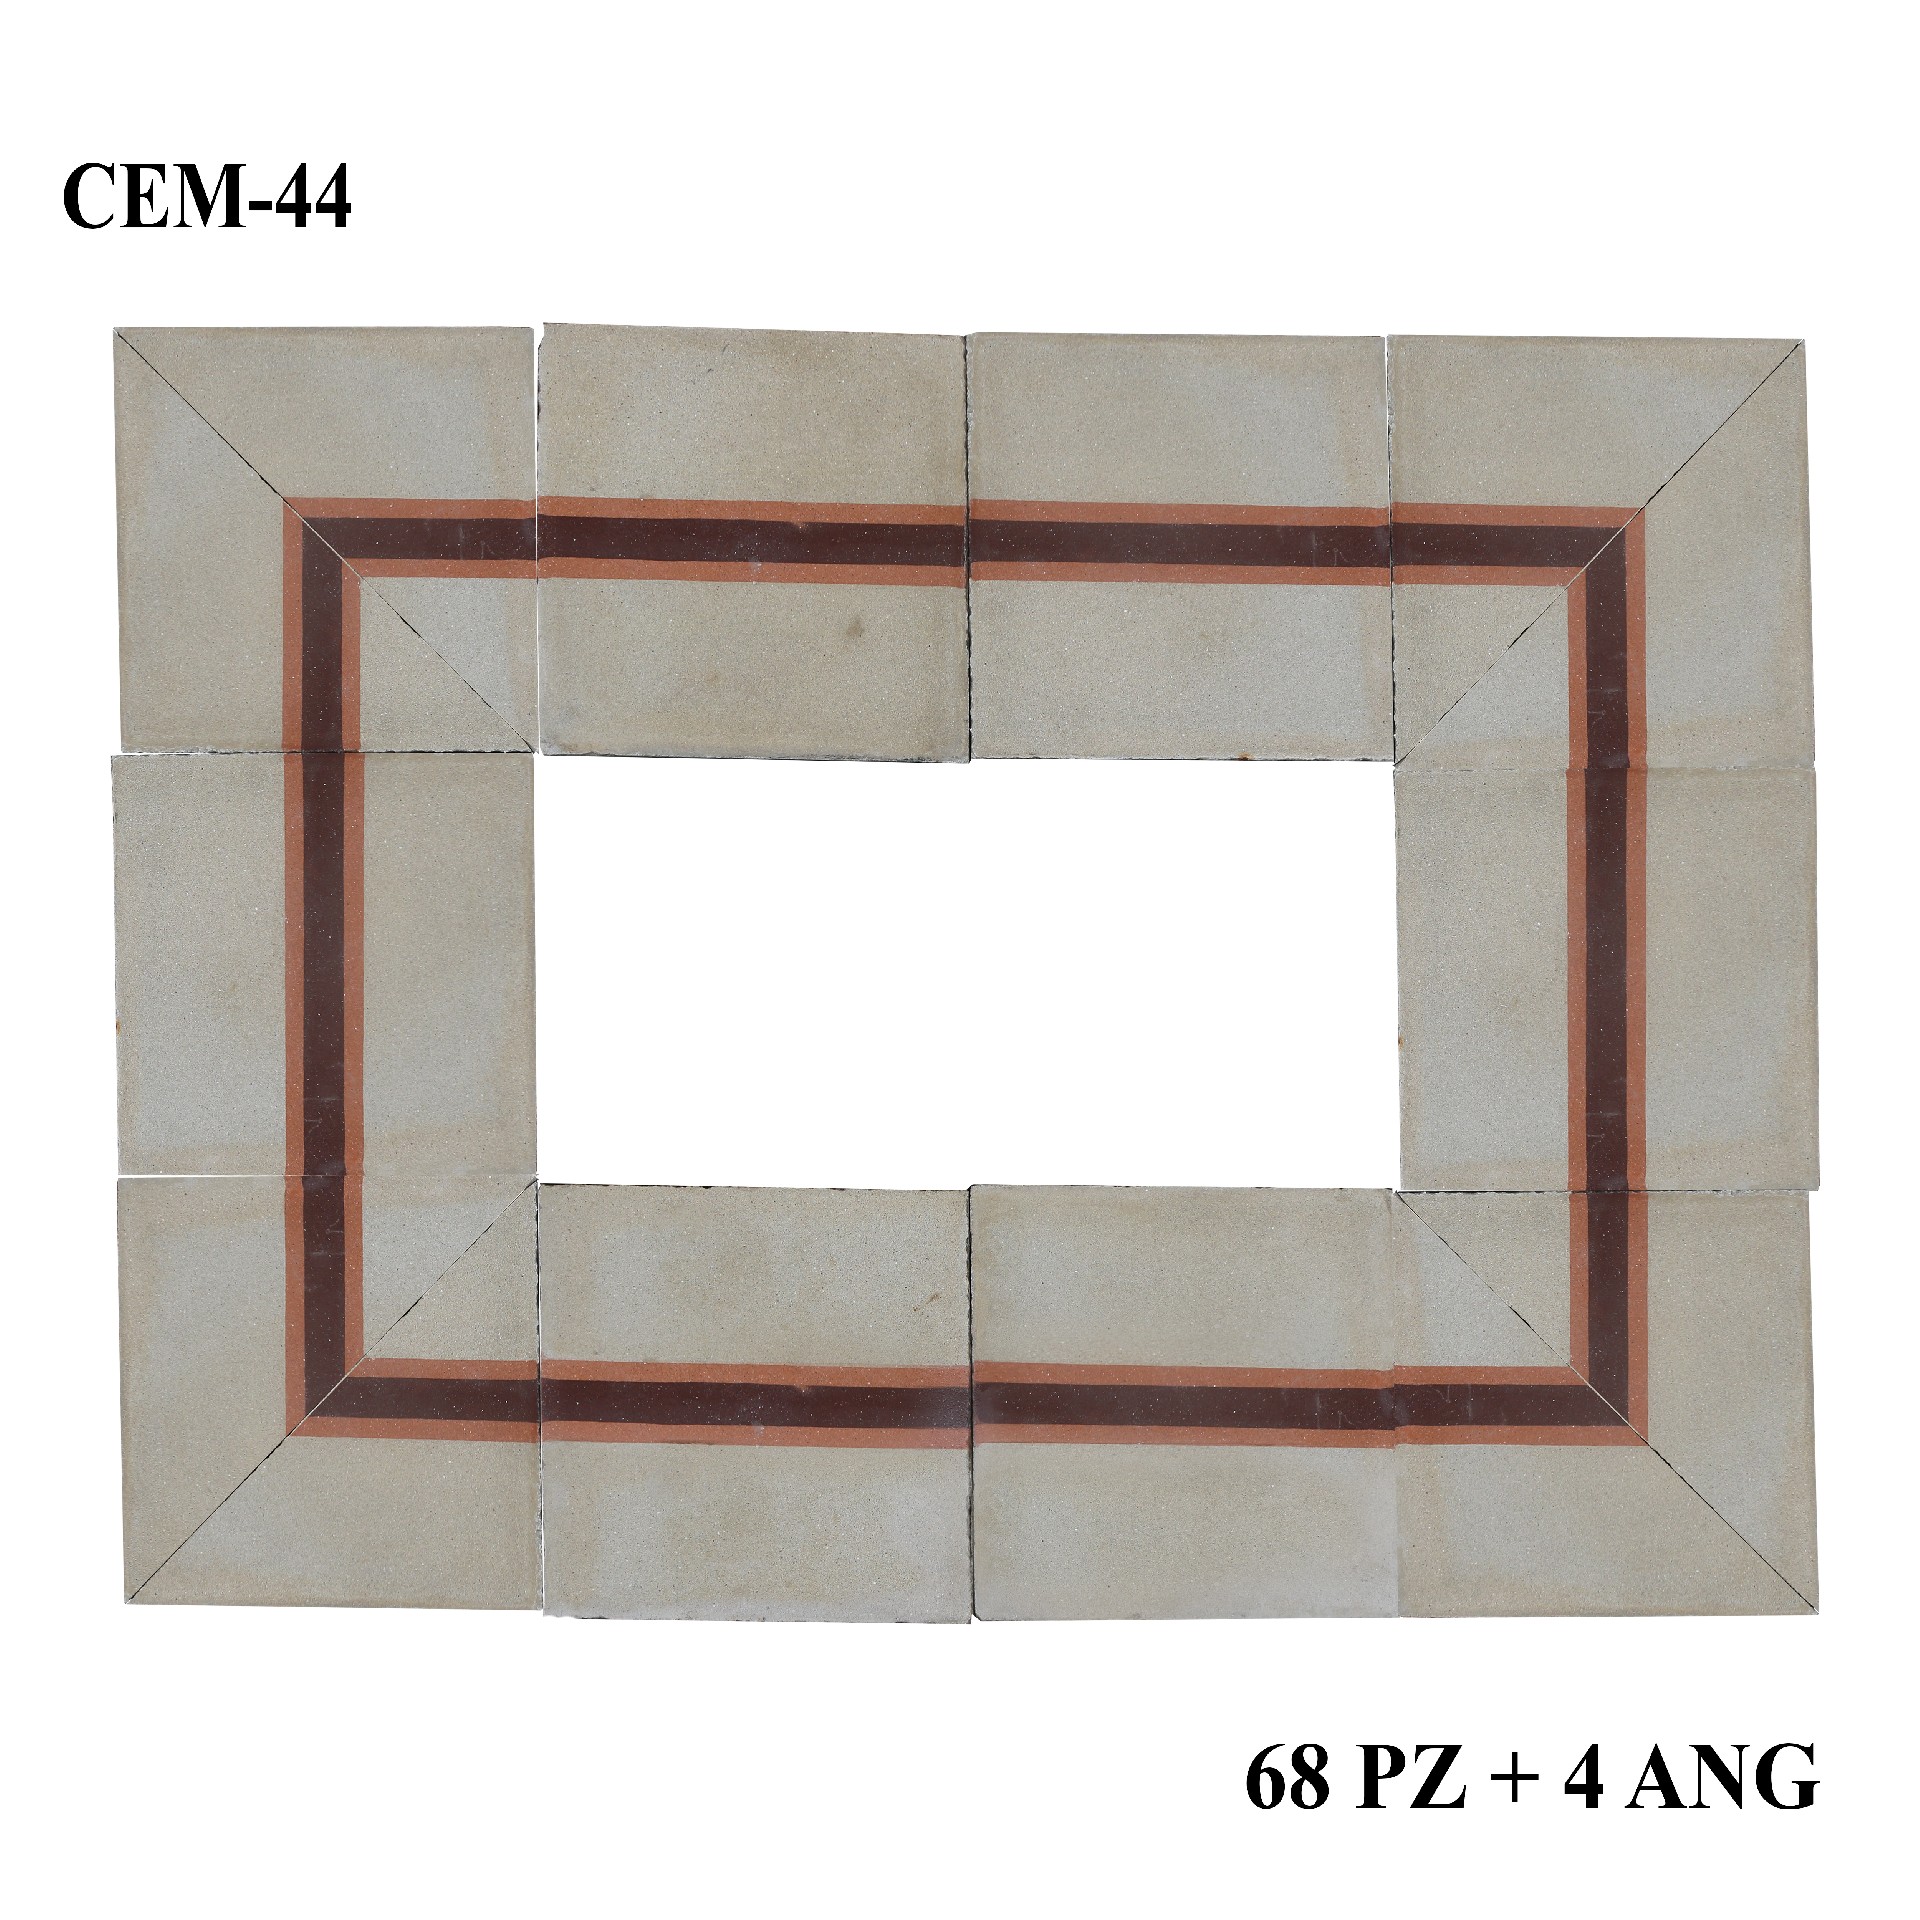 Antica pavimentazione in cementine cm20x20 - Cementine e Graniglie - Pavimentazioni Antiche - Prodotti - Antichità Fiorillo